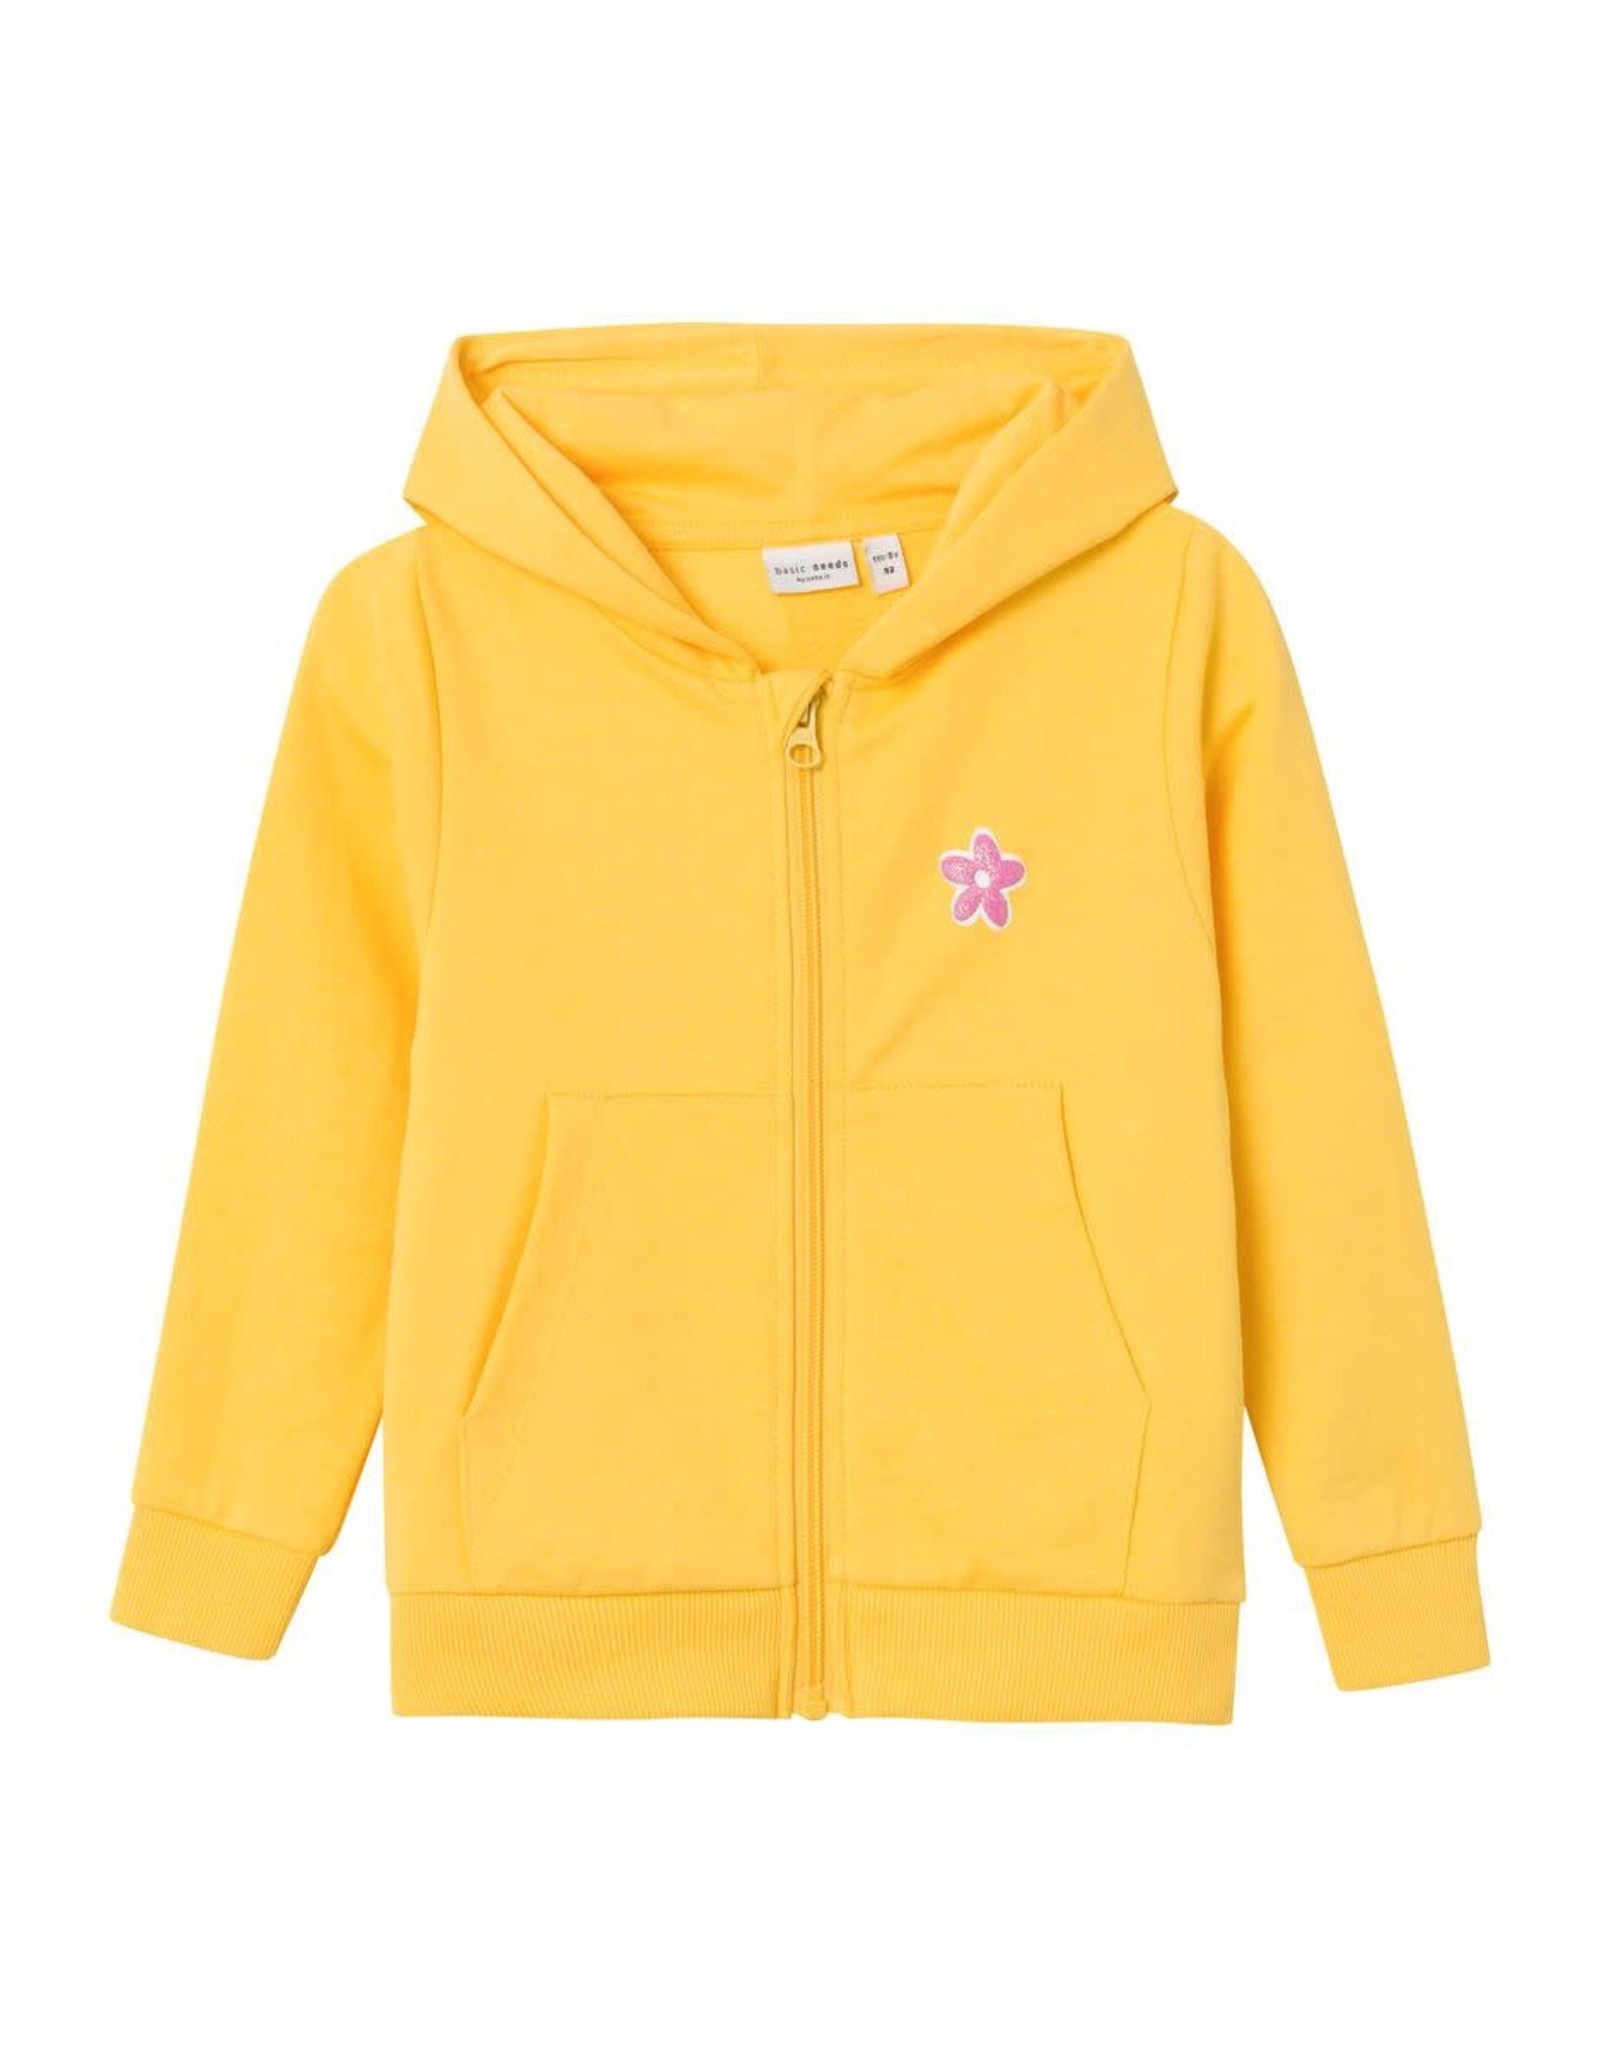 Name It Geel hoodie vestje met rits en glitterbloem